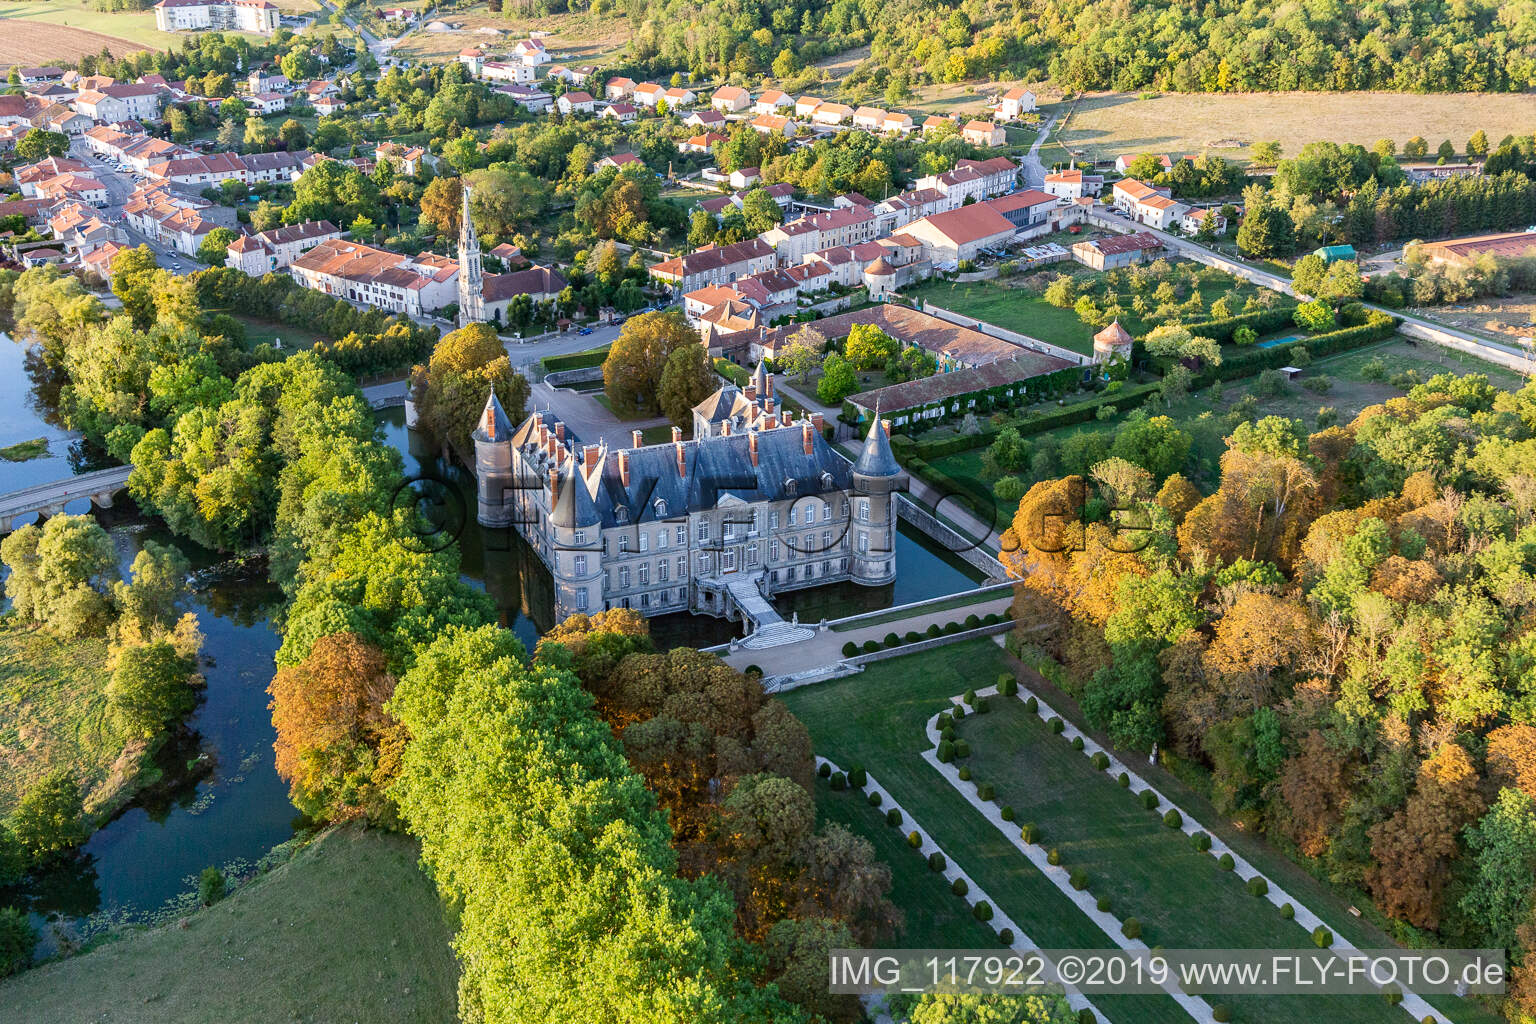 Chateau de Haroué im Bundesland Meurthe-et-Moselle, Frankreich aus der Luft betrachtet